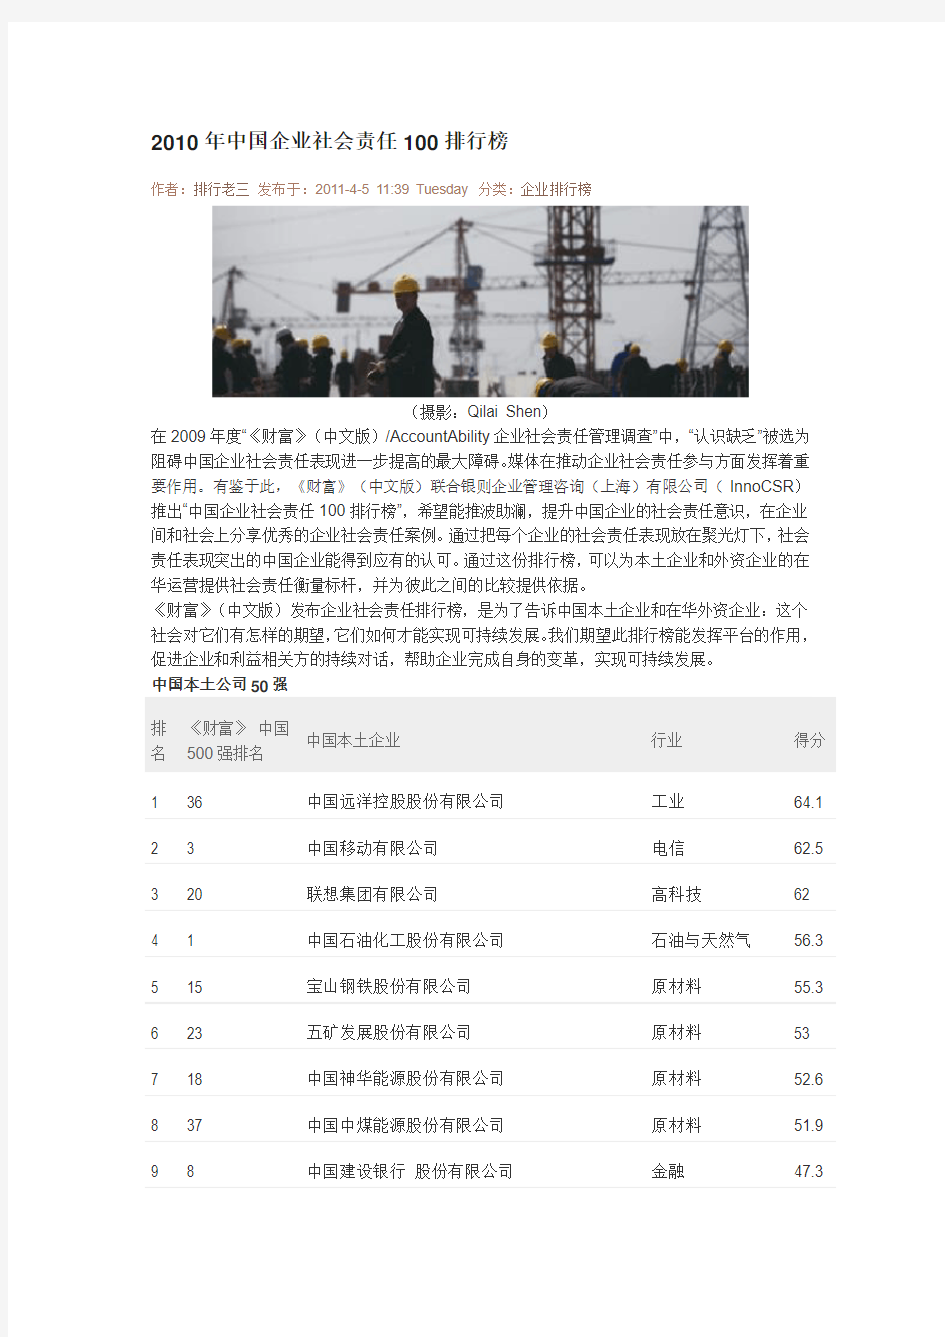 中国企业社会责任100排行榜